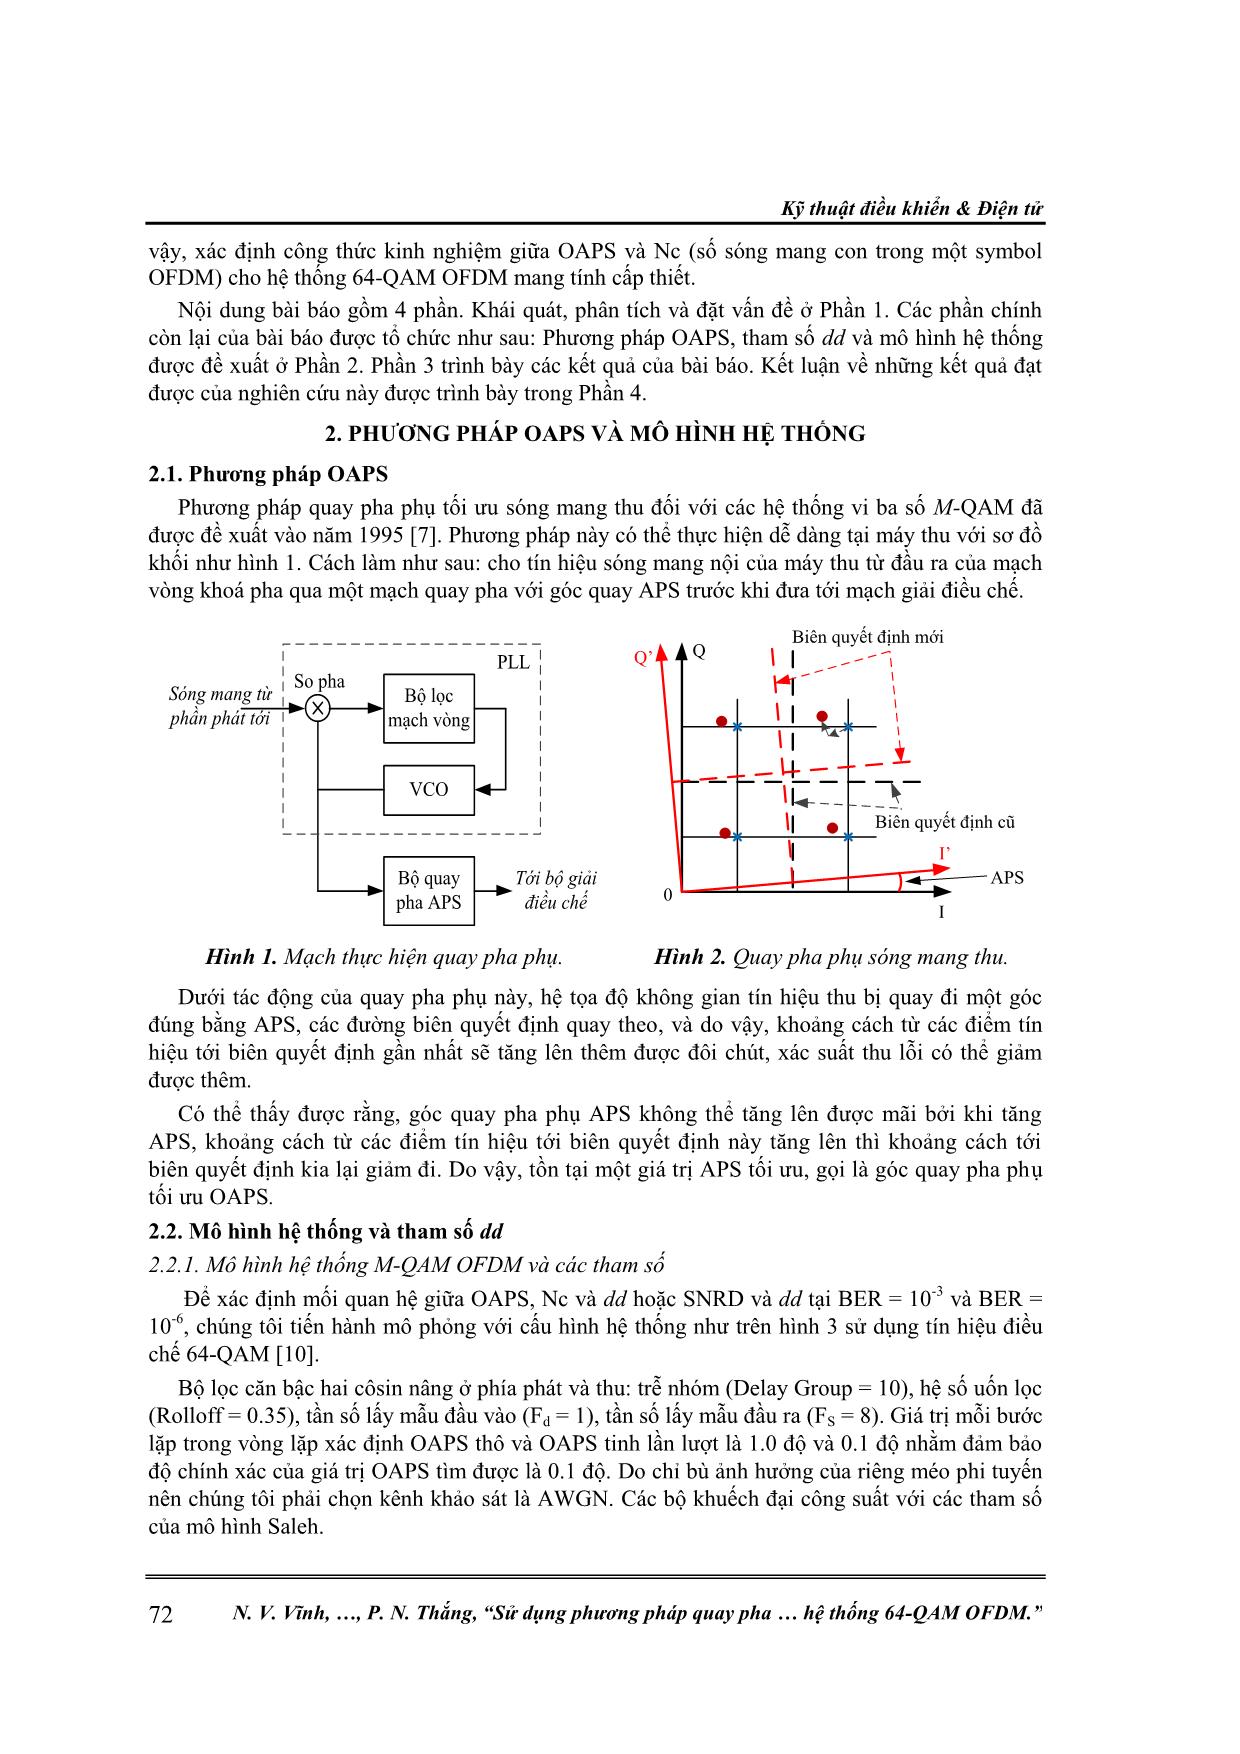 Sử dụng phương pháp quay pha phụ tối ưu để giảm ảnh hưởng của méo phi tuyến trong hệ thống 64-QAM Ofdm trang 2